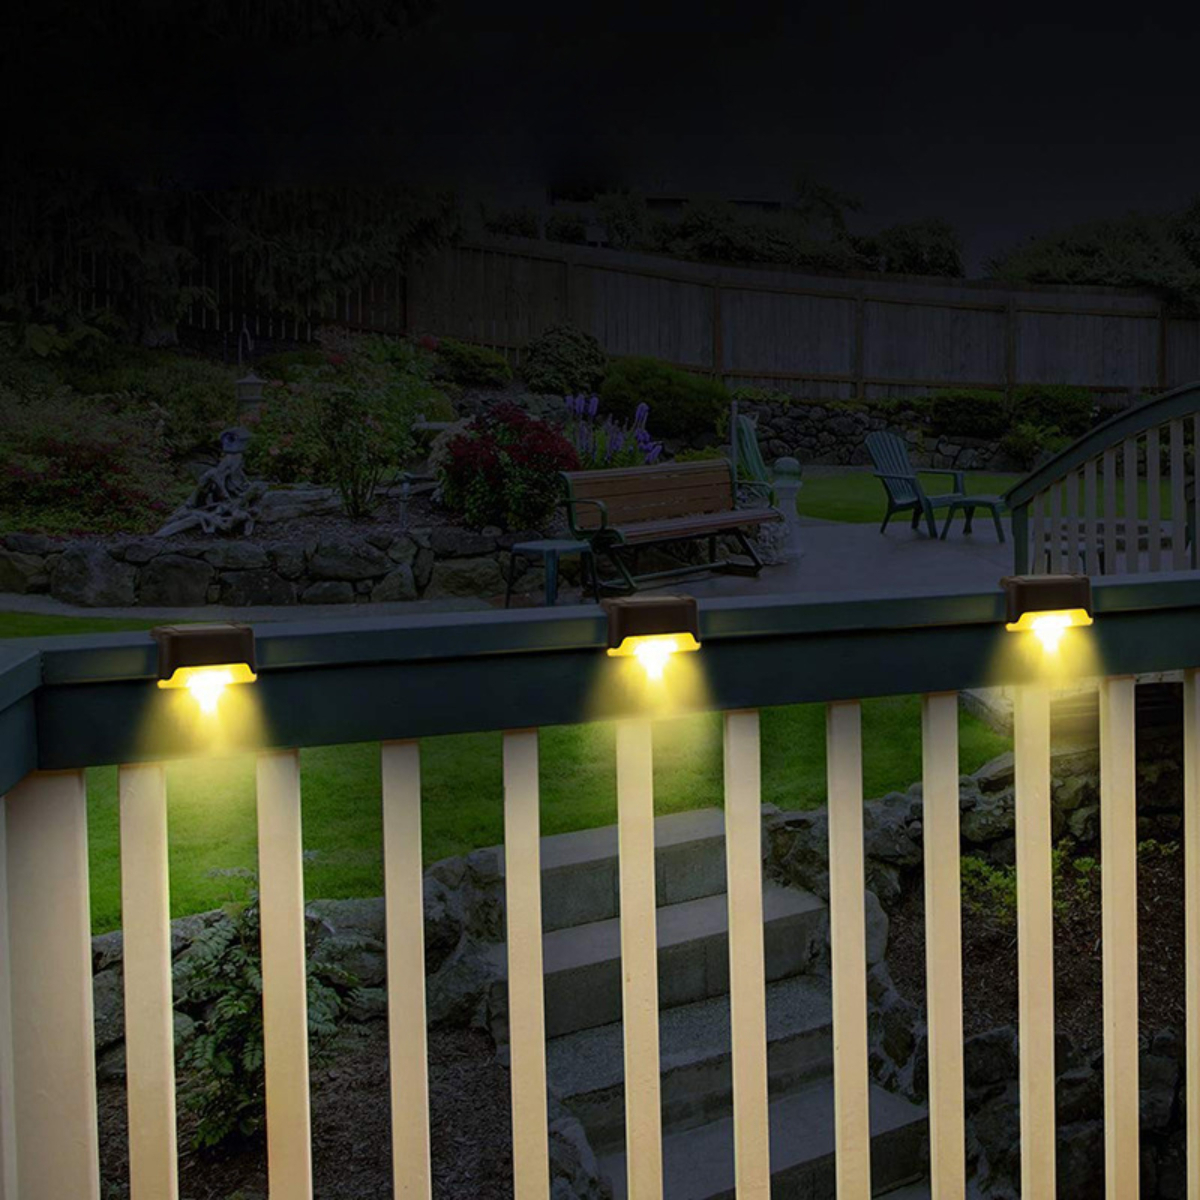 Lichter UWOT 黑, Lichter LED Solarleuchten Outdoor Dekorative Garten Solarleuchten, Gelb